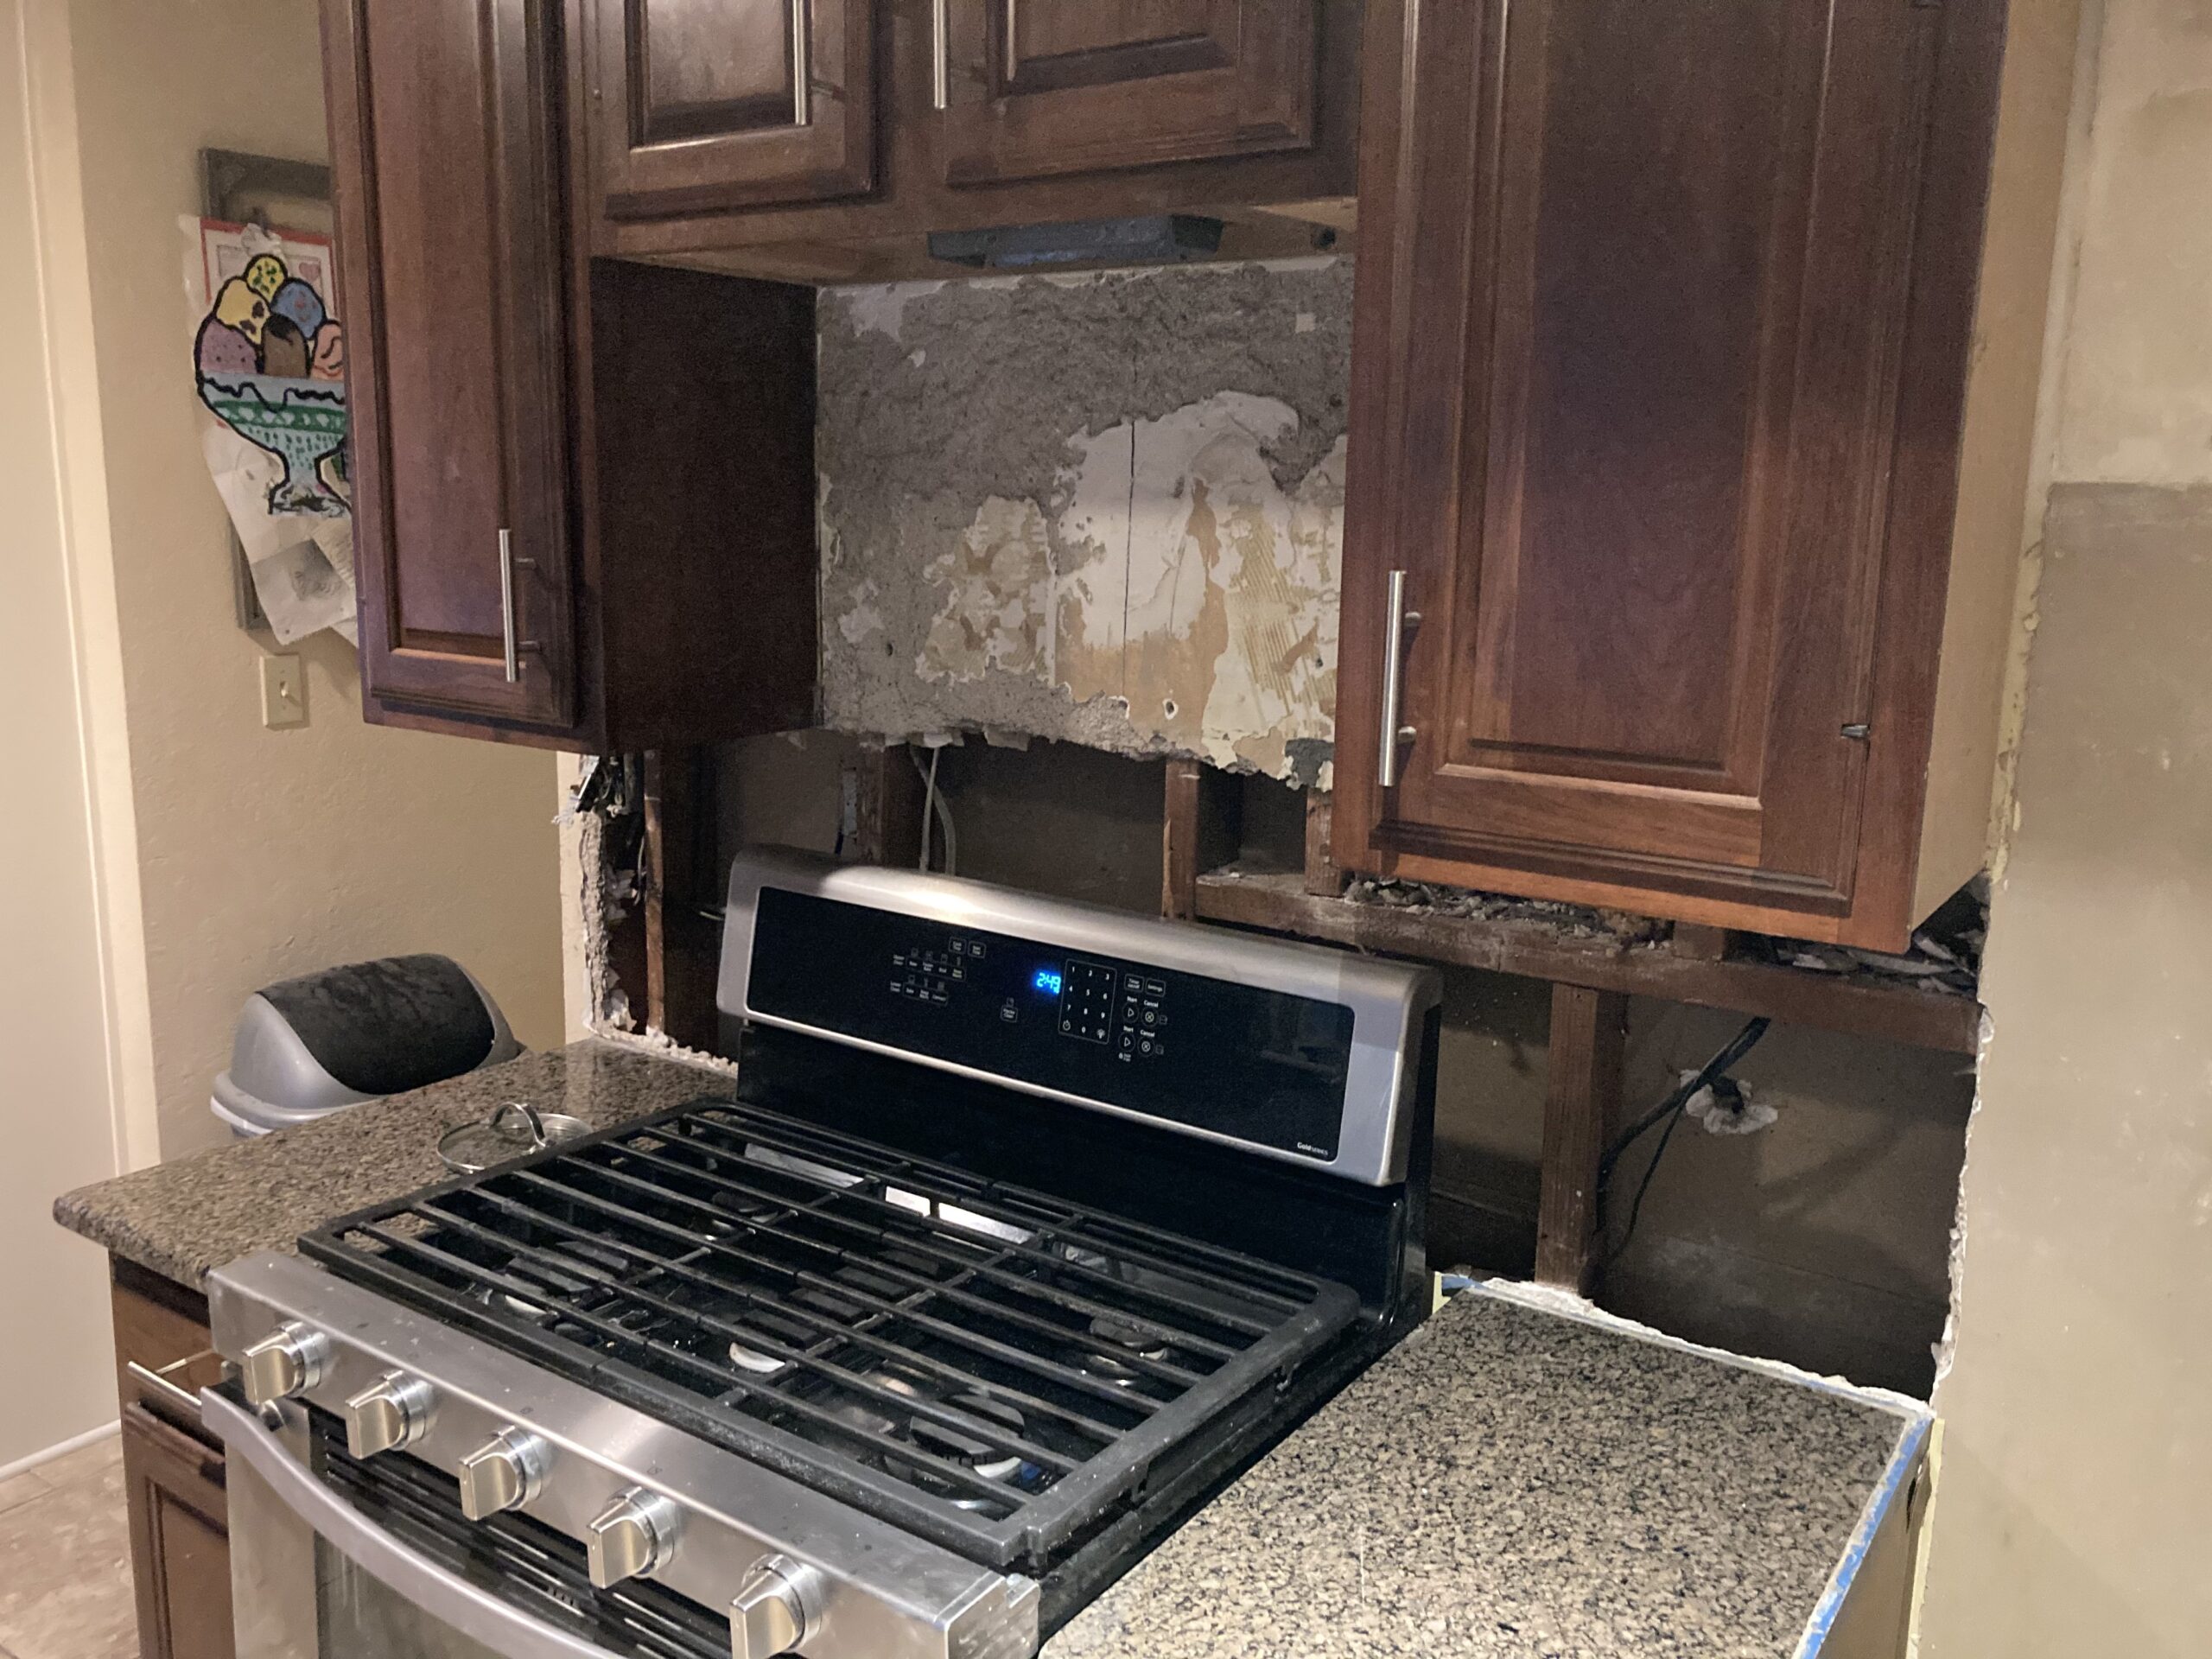 Plan Rebuild Kitchen Remodel - Leawood Kansas